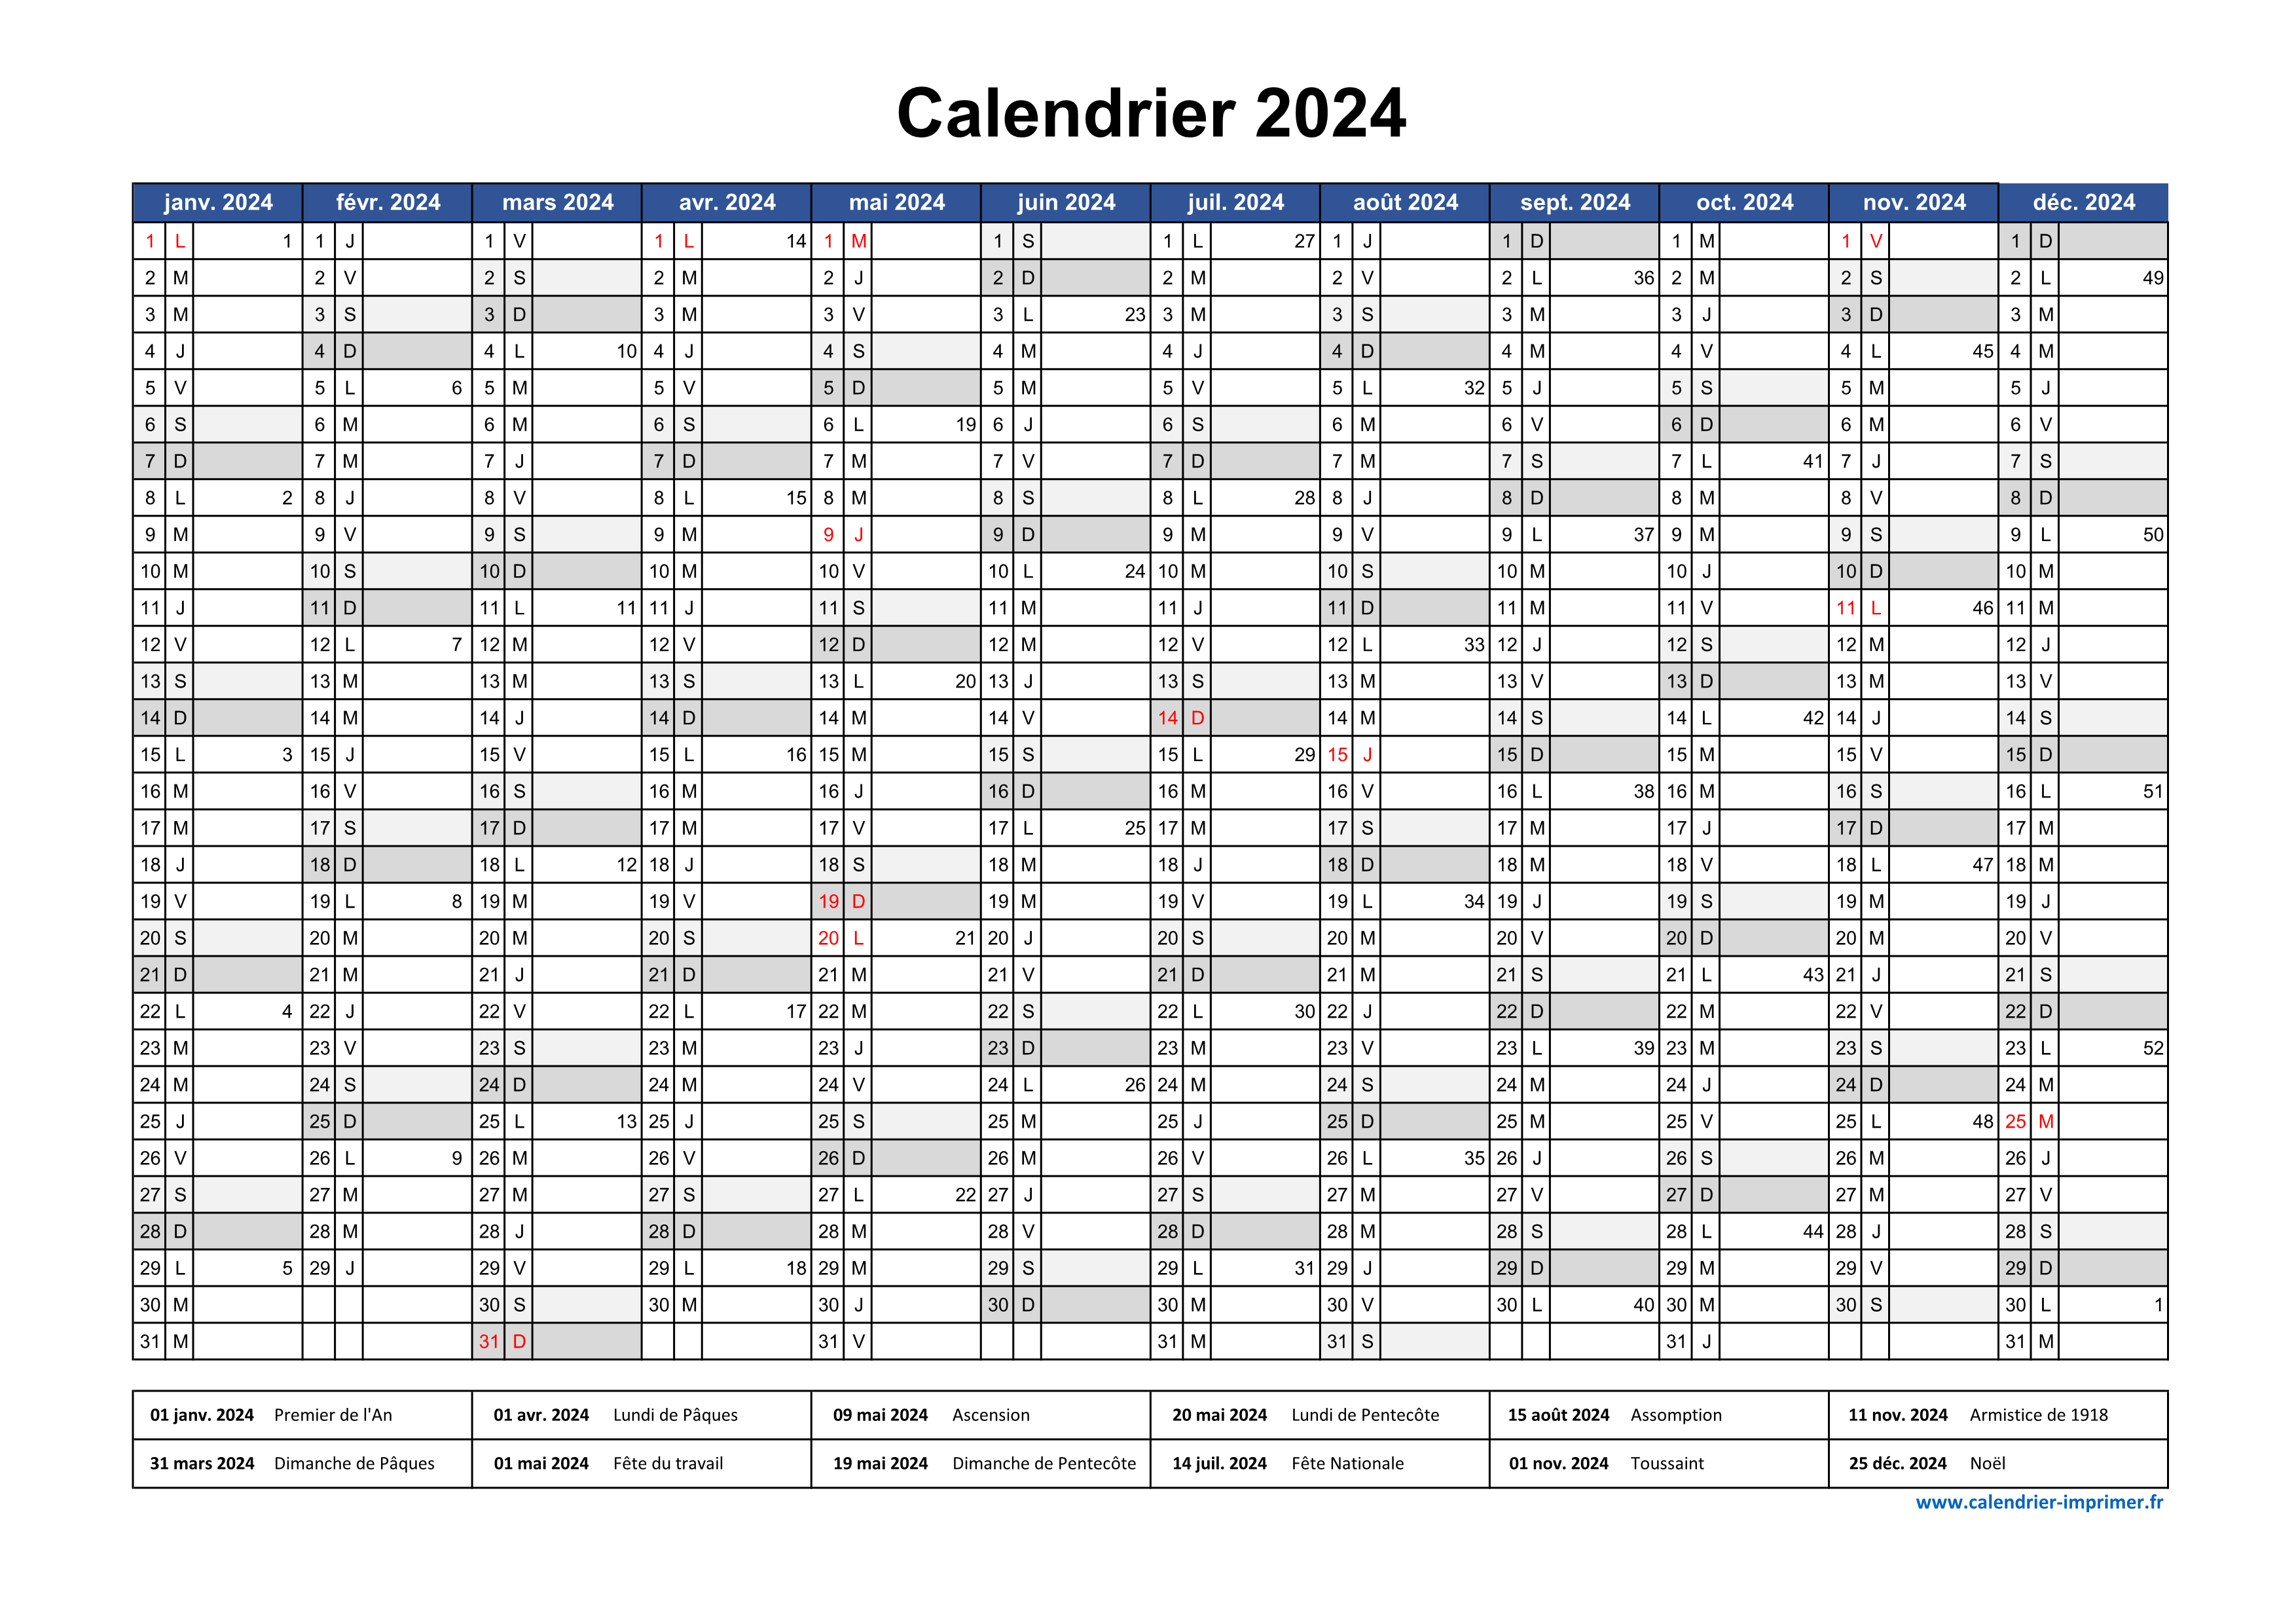 Calendrier 2024 12 mois au format 320 x 840 mm entièrement